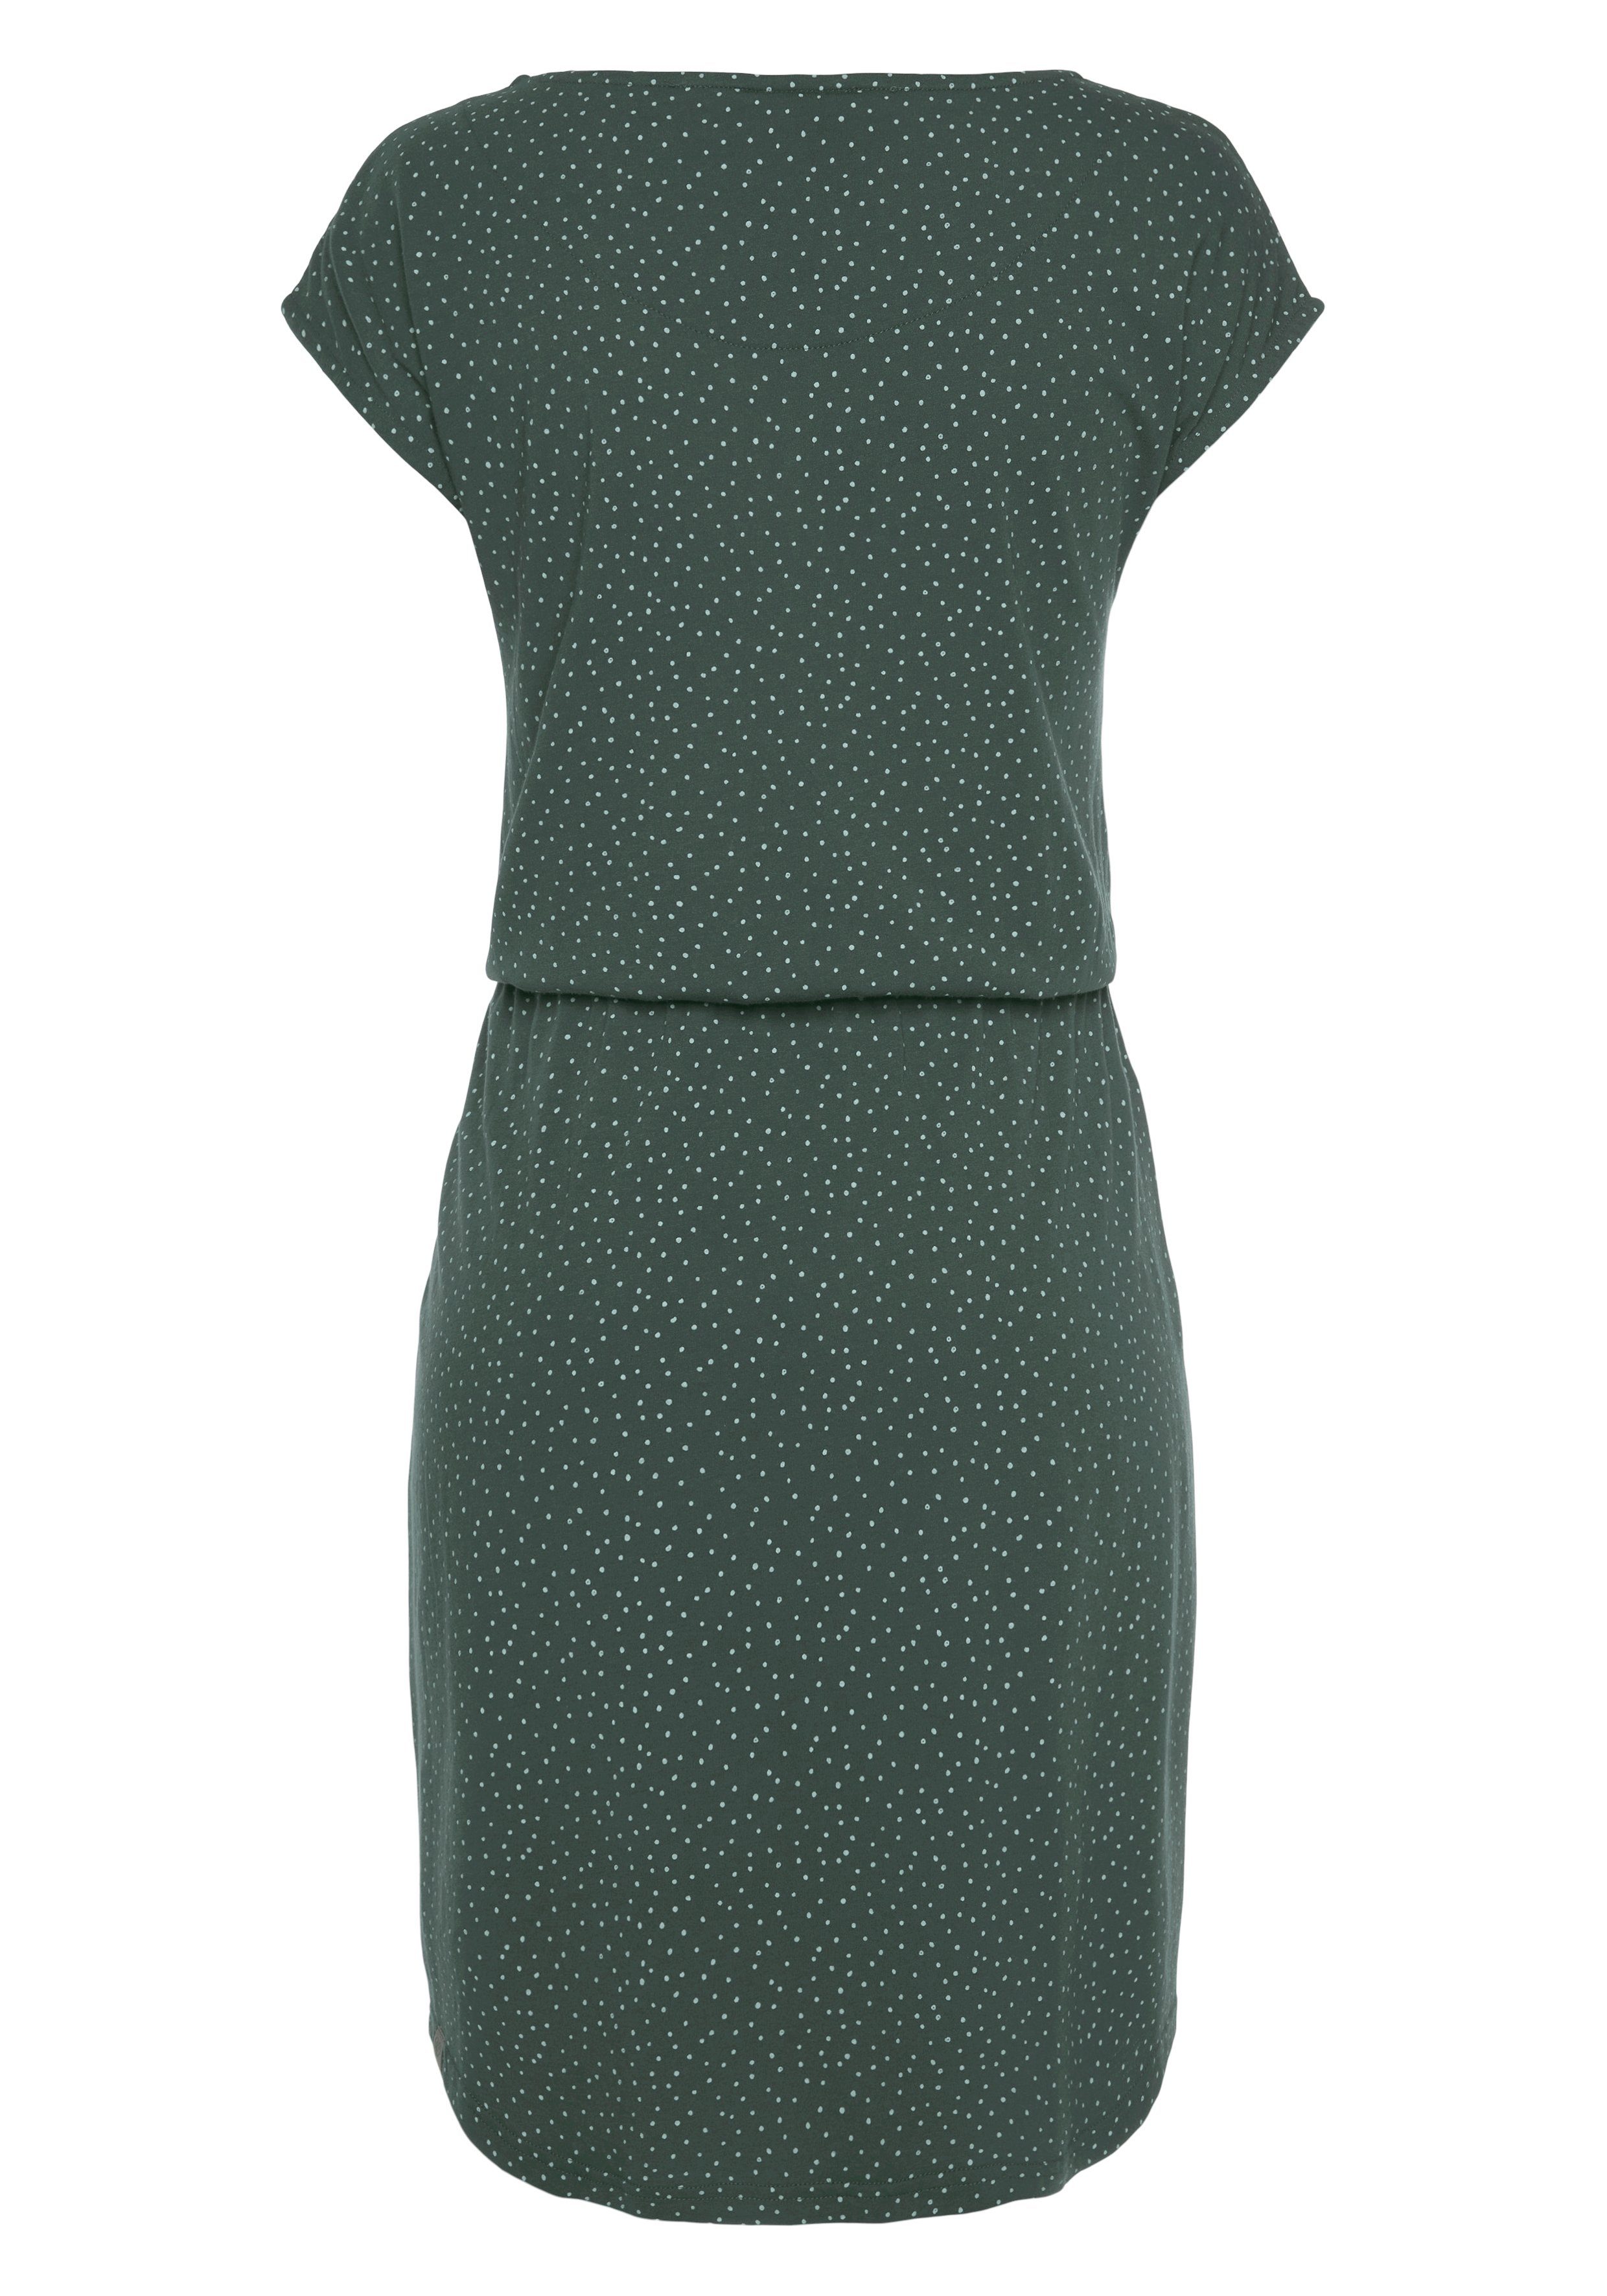 Sommerkleid dunkelgrün LILITHE Allover Punkte-Muster mit Ragwear